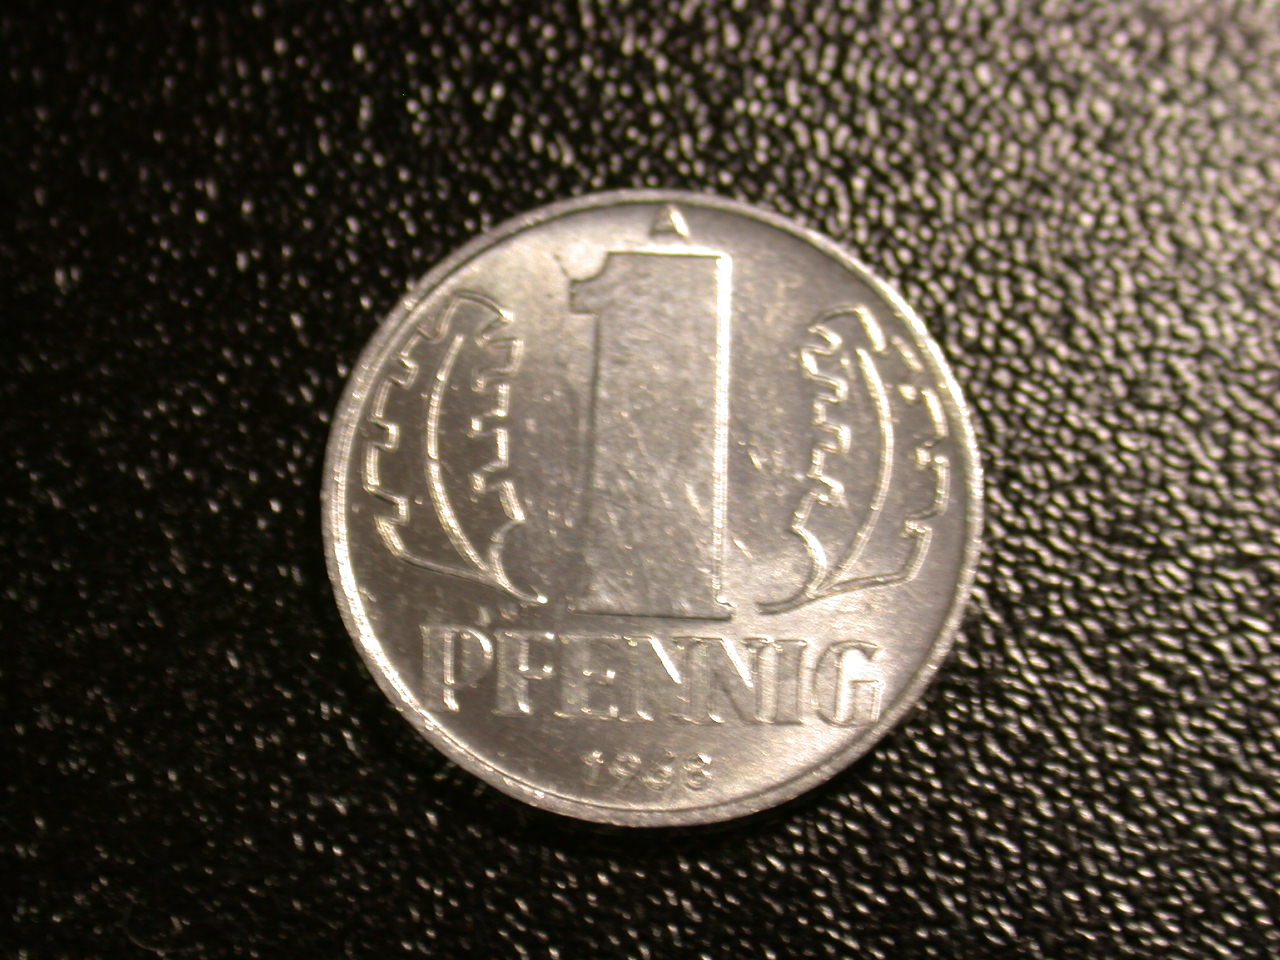  12045  DDR   1 Pfennig  1968  in f.st/st   